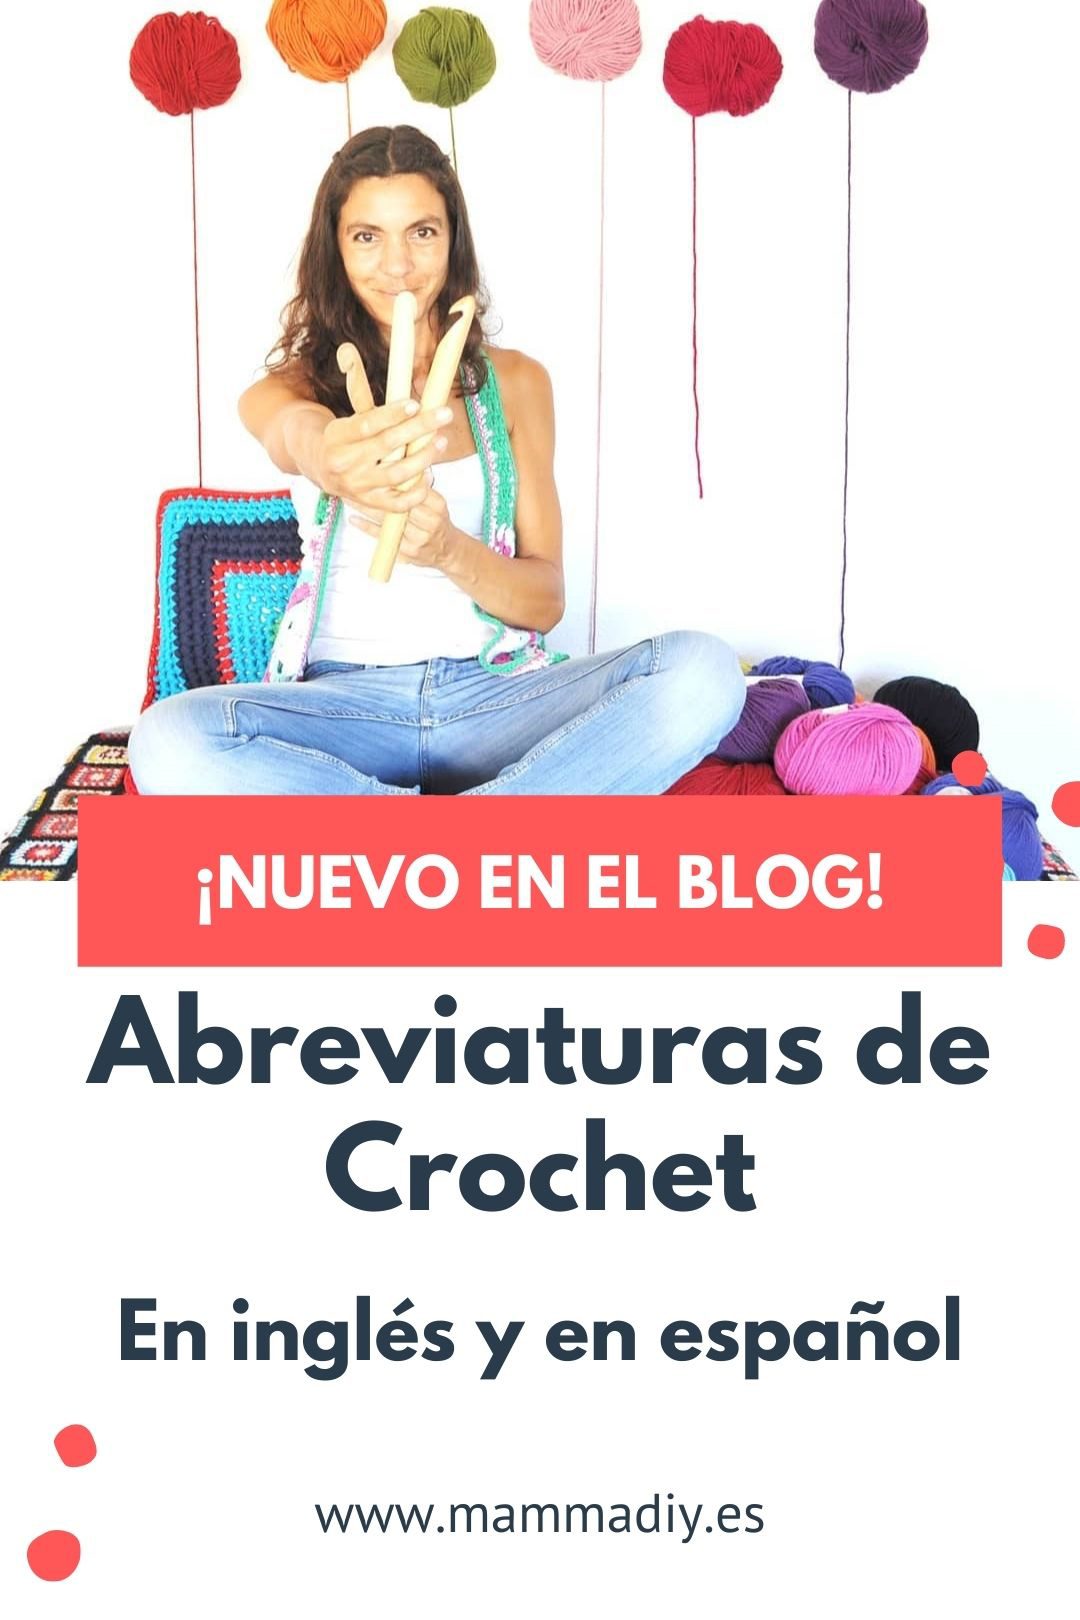 abreviaturas de crochet en inglés y español